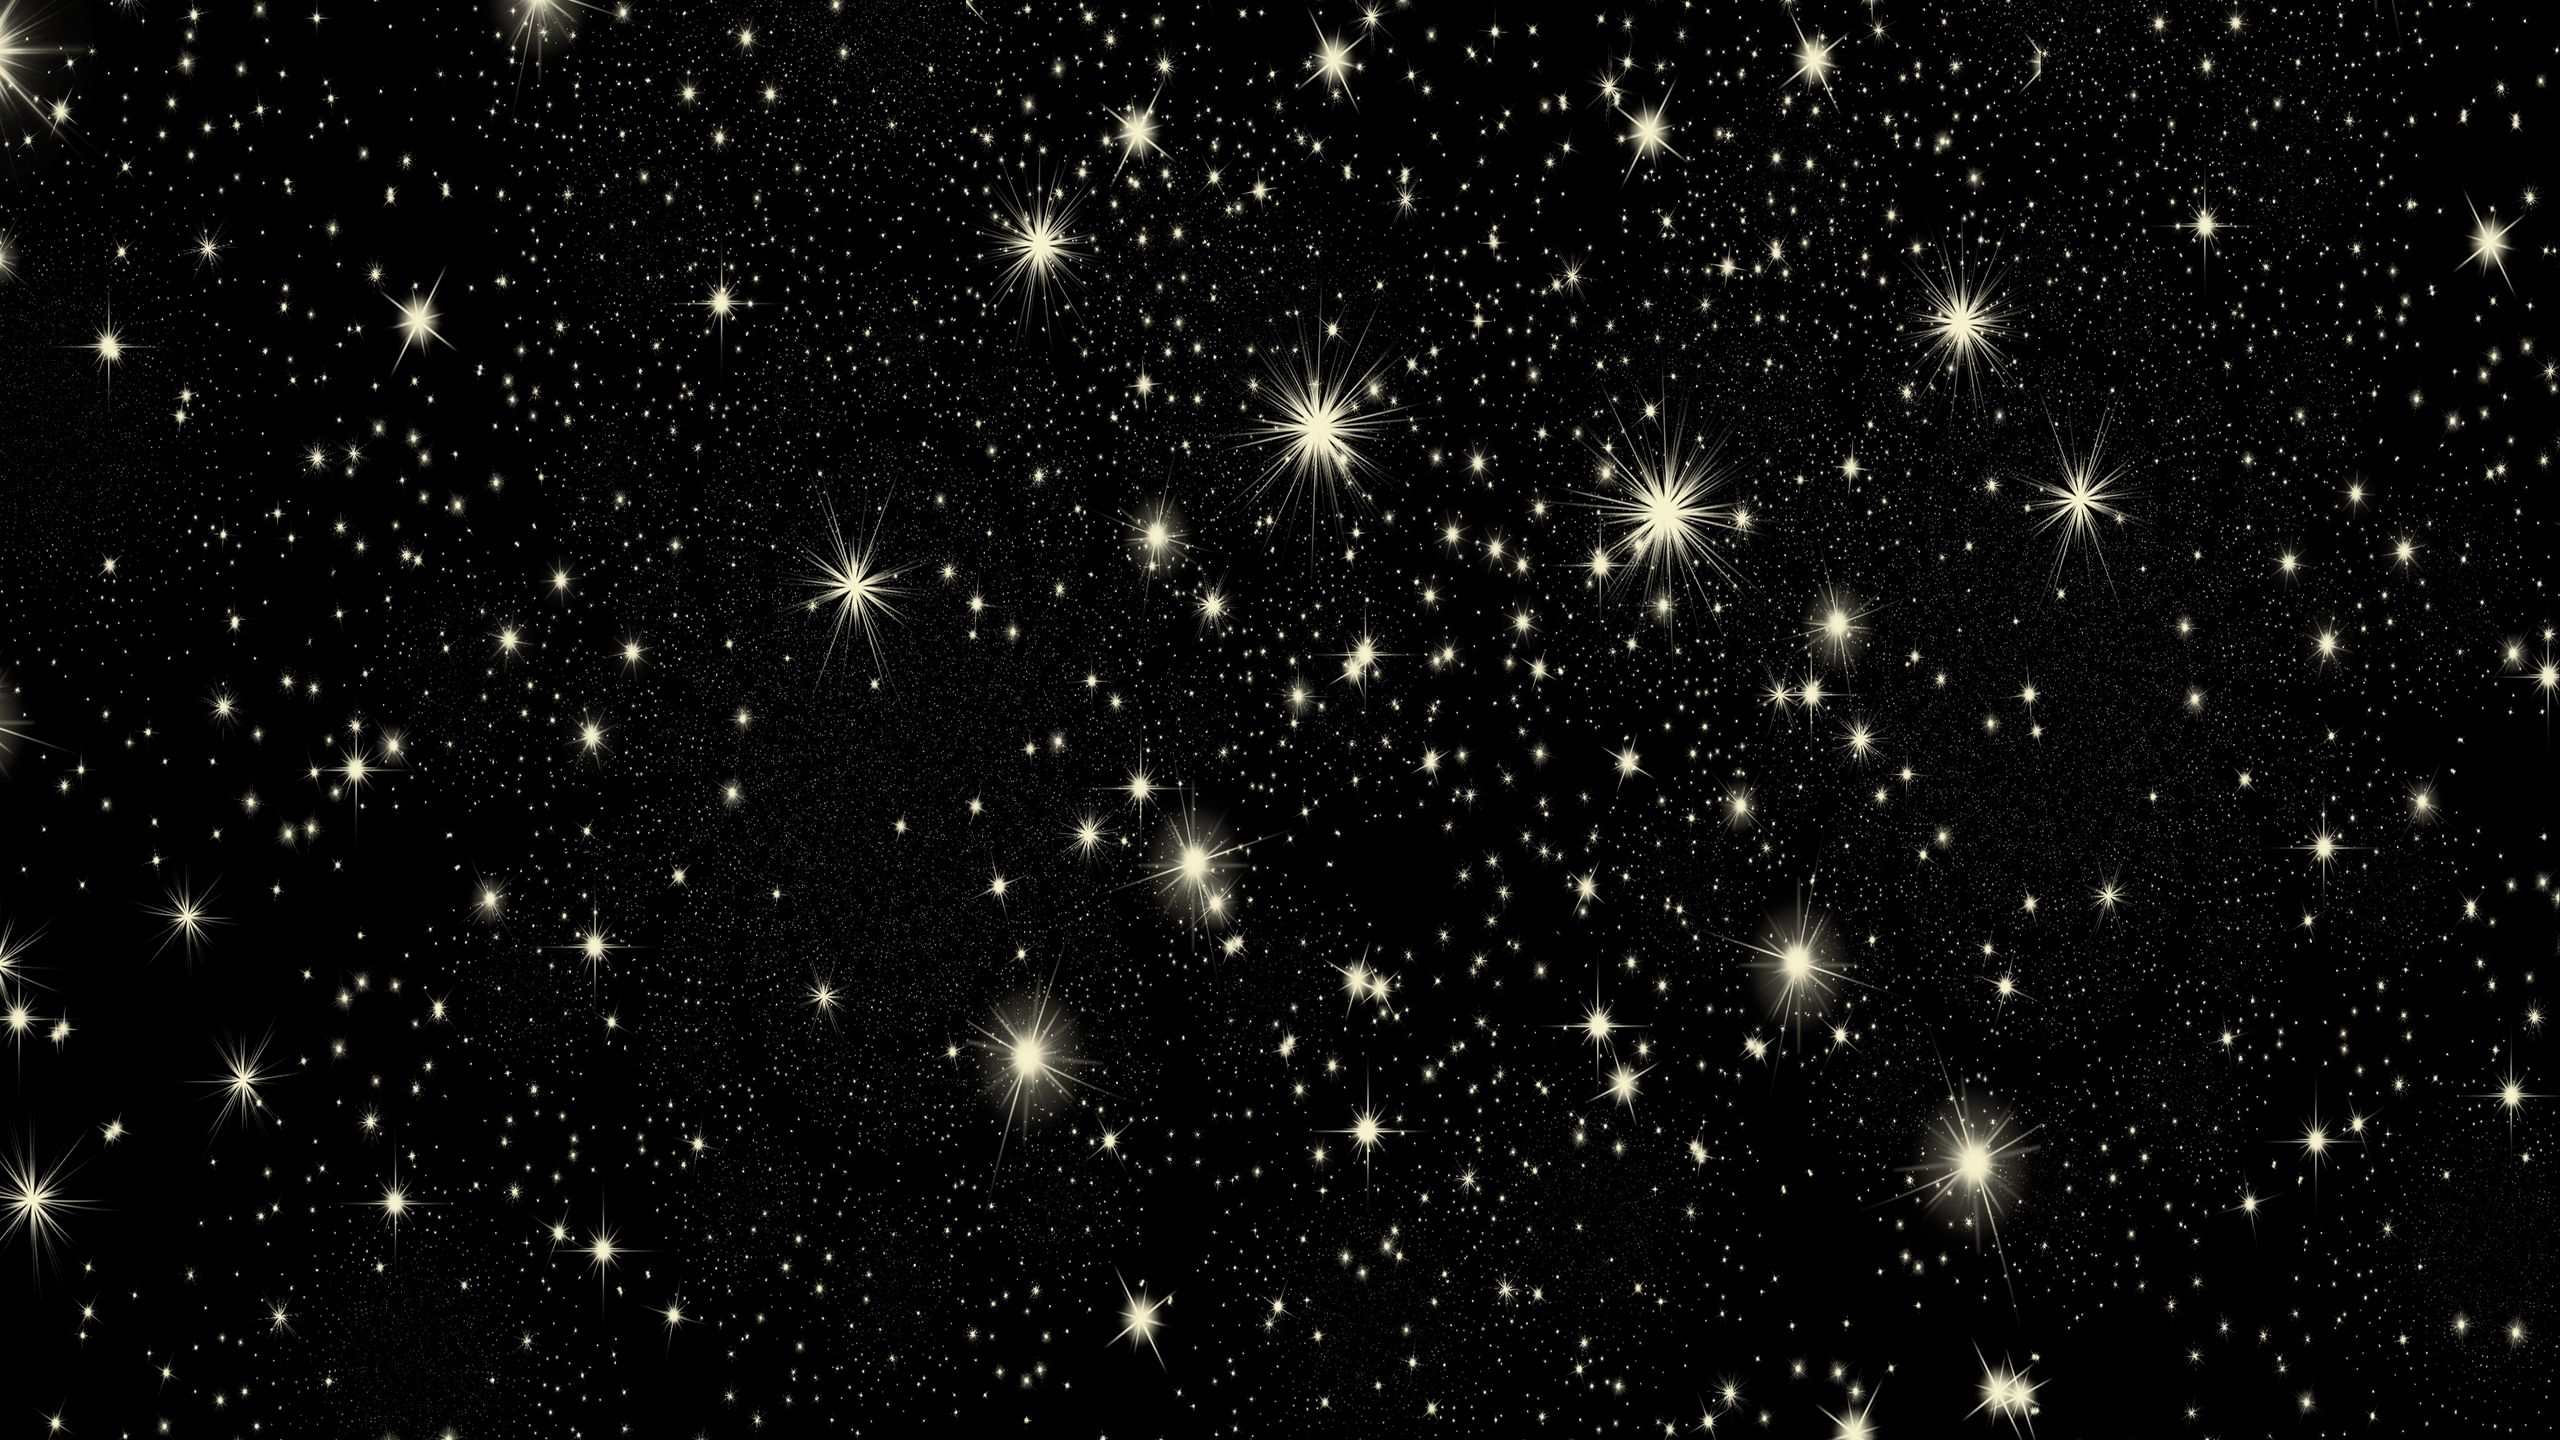 Download wallpaper 2560x1440 stars, star, glitter, patterns